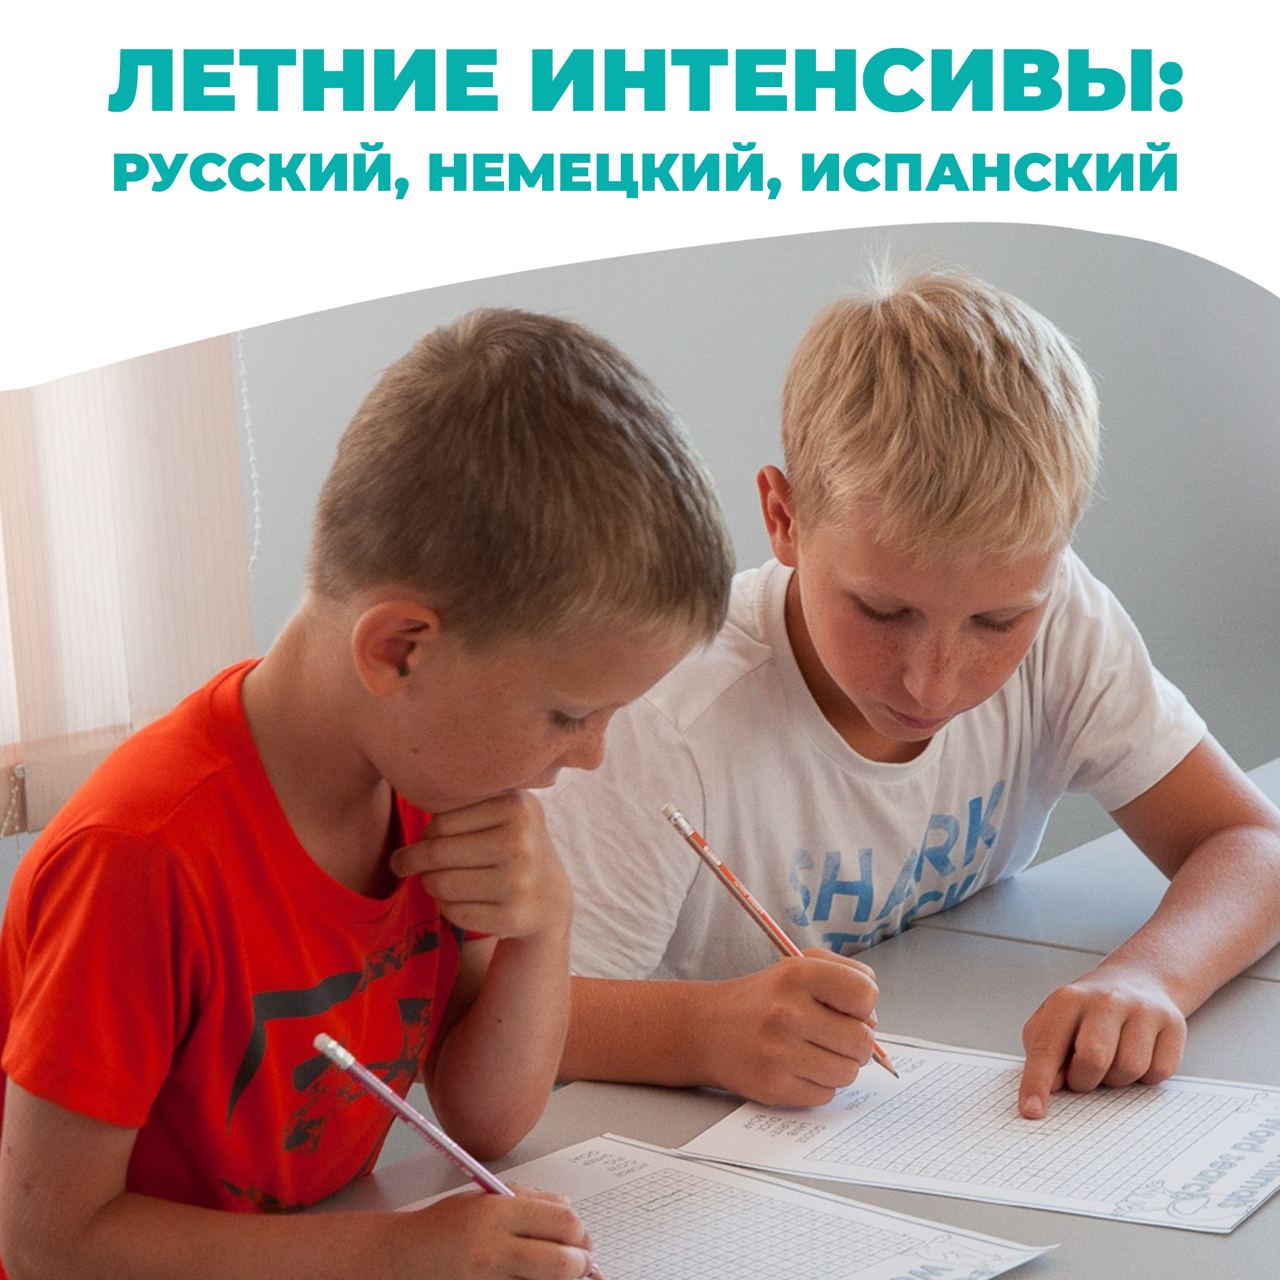 Летний интенсив по русскому языку для школьников. Интенсив по русскому